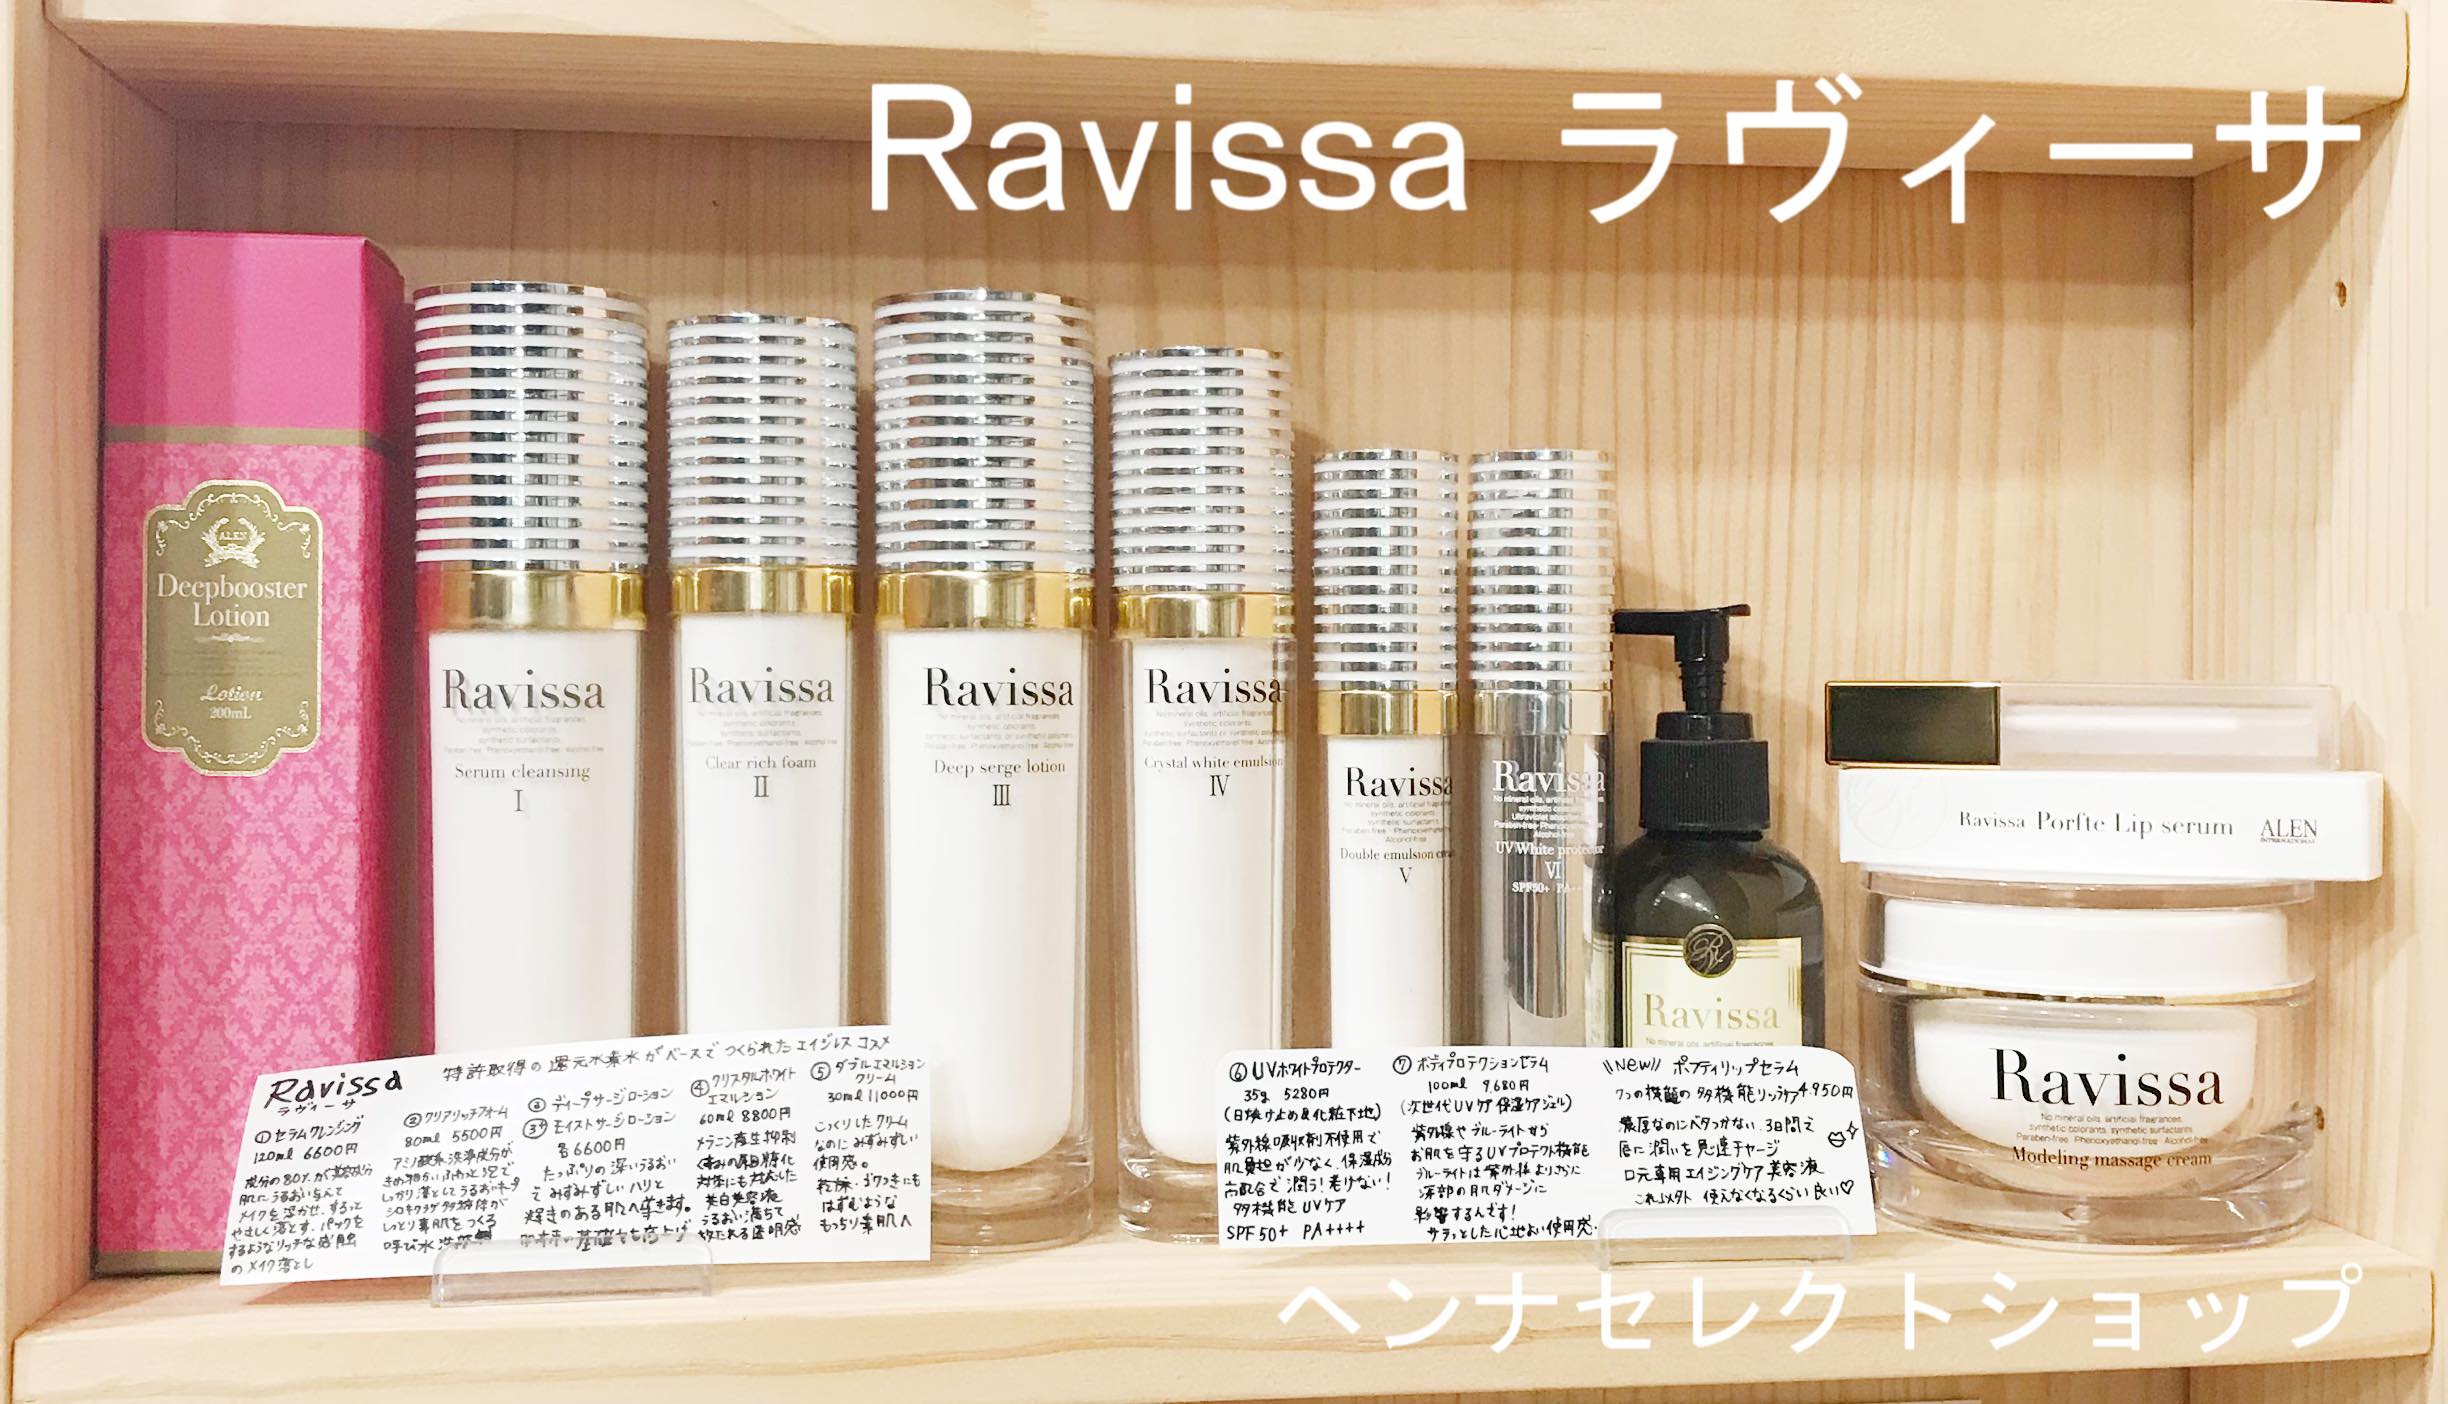 Ravissa ラヴィーサ】化粧品のお値段 (製品価格) | ヘンナセレクト